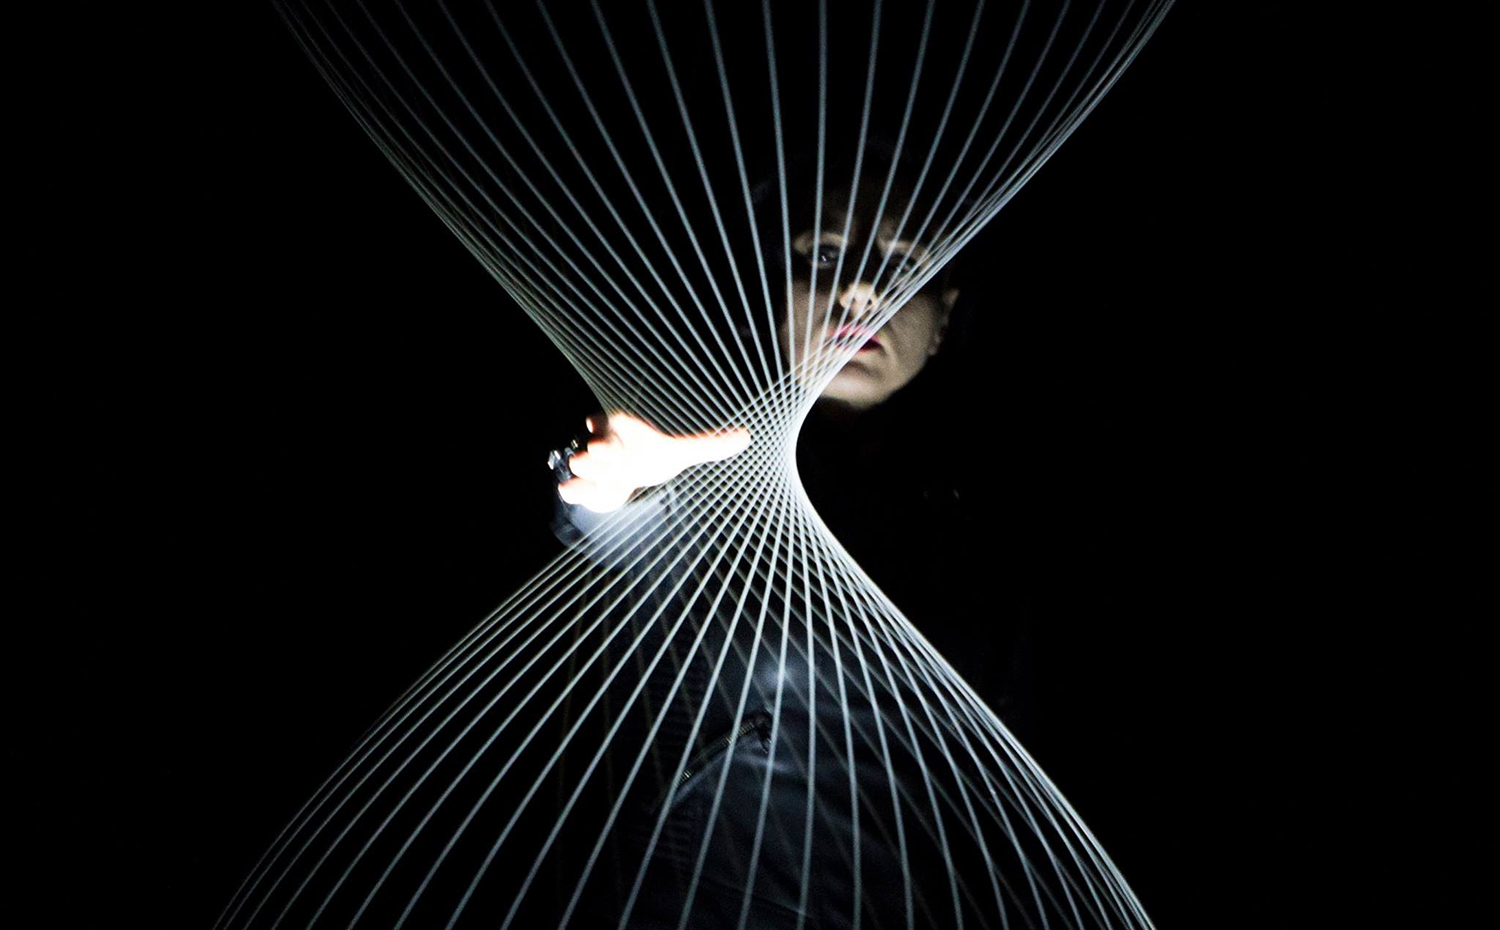 unnamed. El videoartista digital Román Torre realizará una demostración en vivo de su proyecto Deep Resonance, un espectáculo de luz, sonido y música electrónica inspirado en los sistemas de exploración espacial mediante señales eléctricas